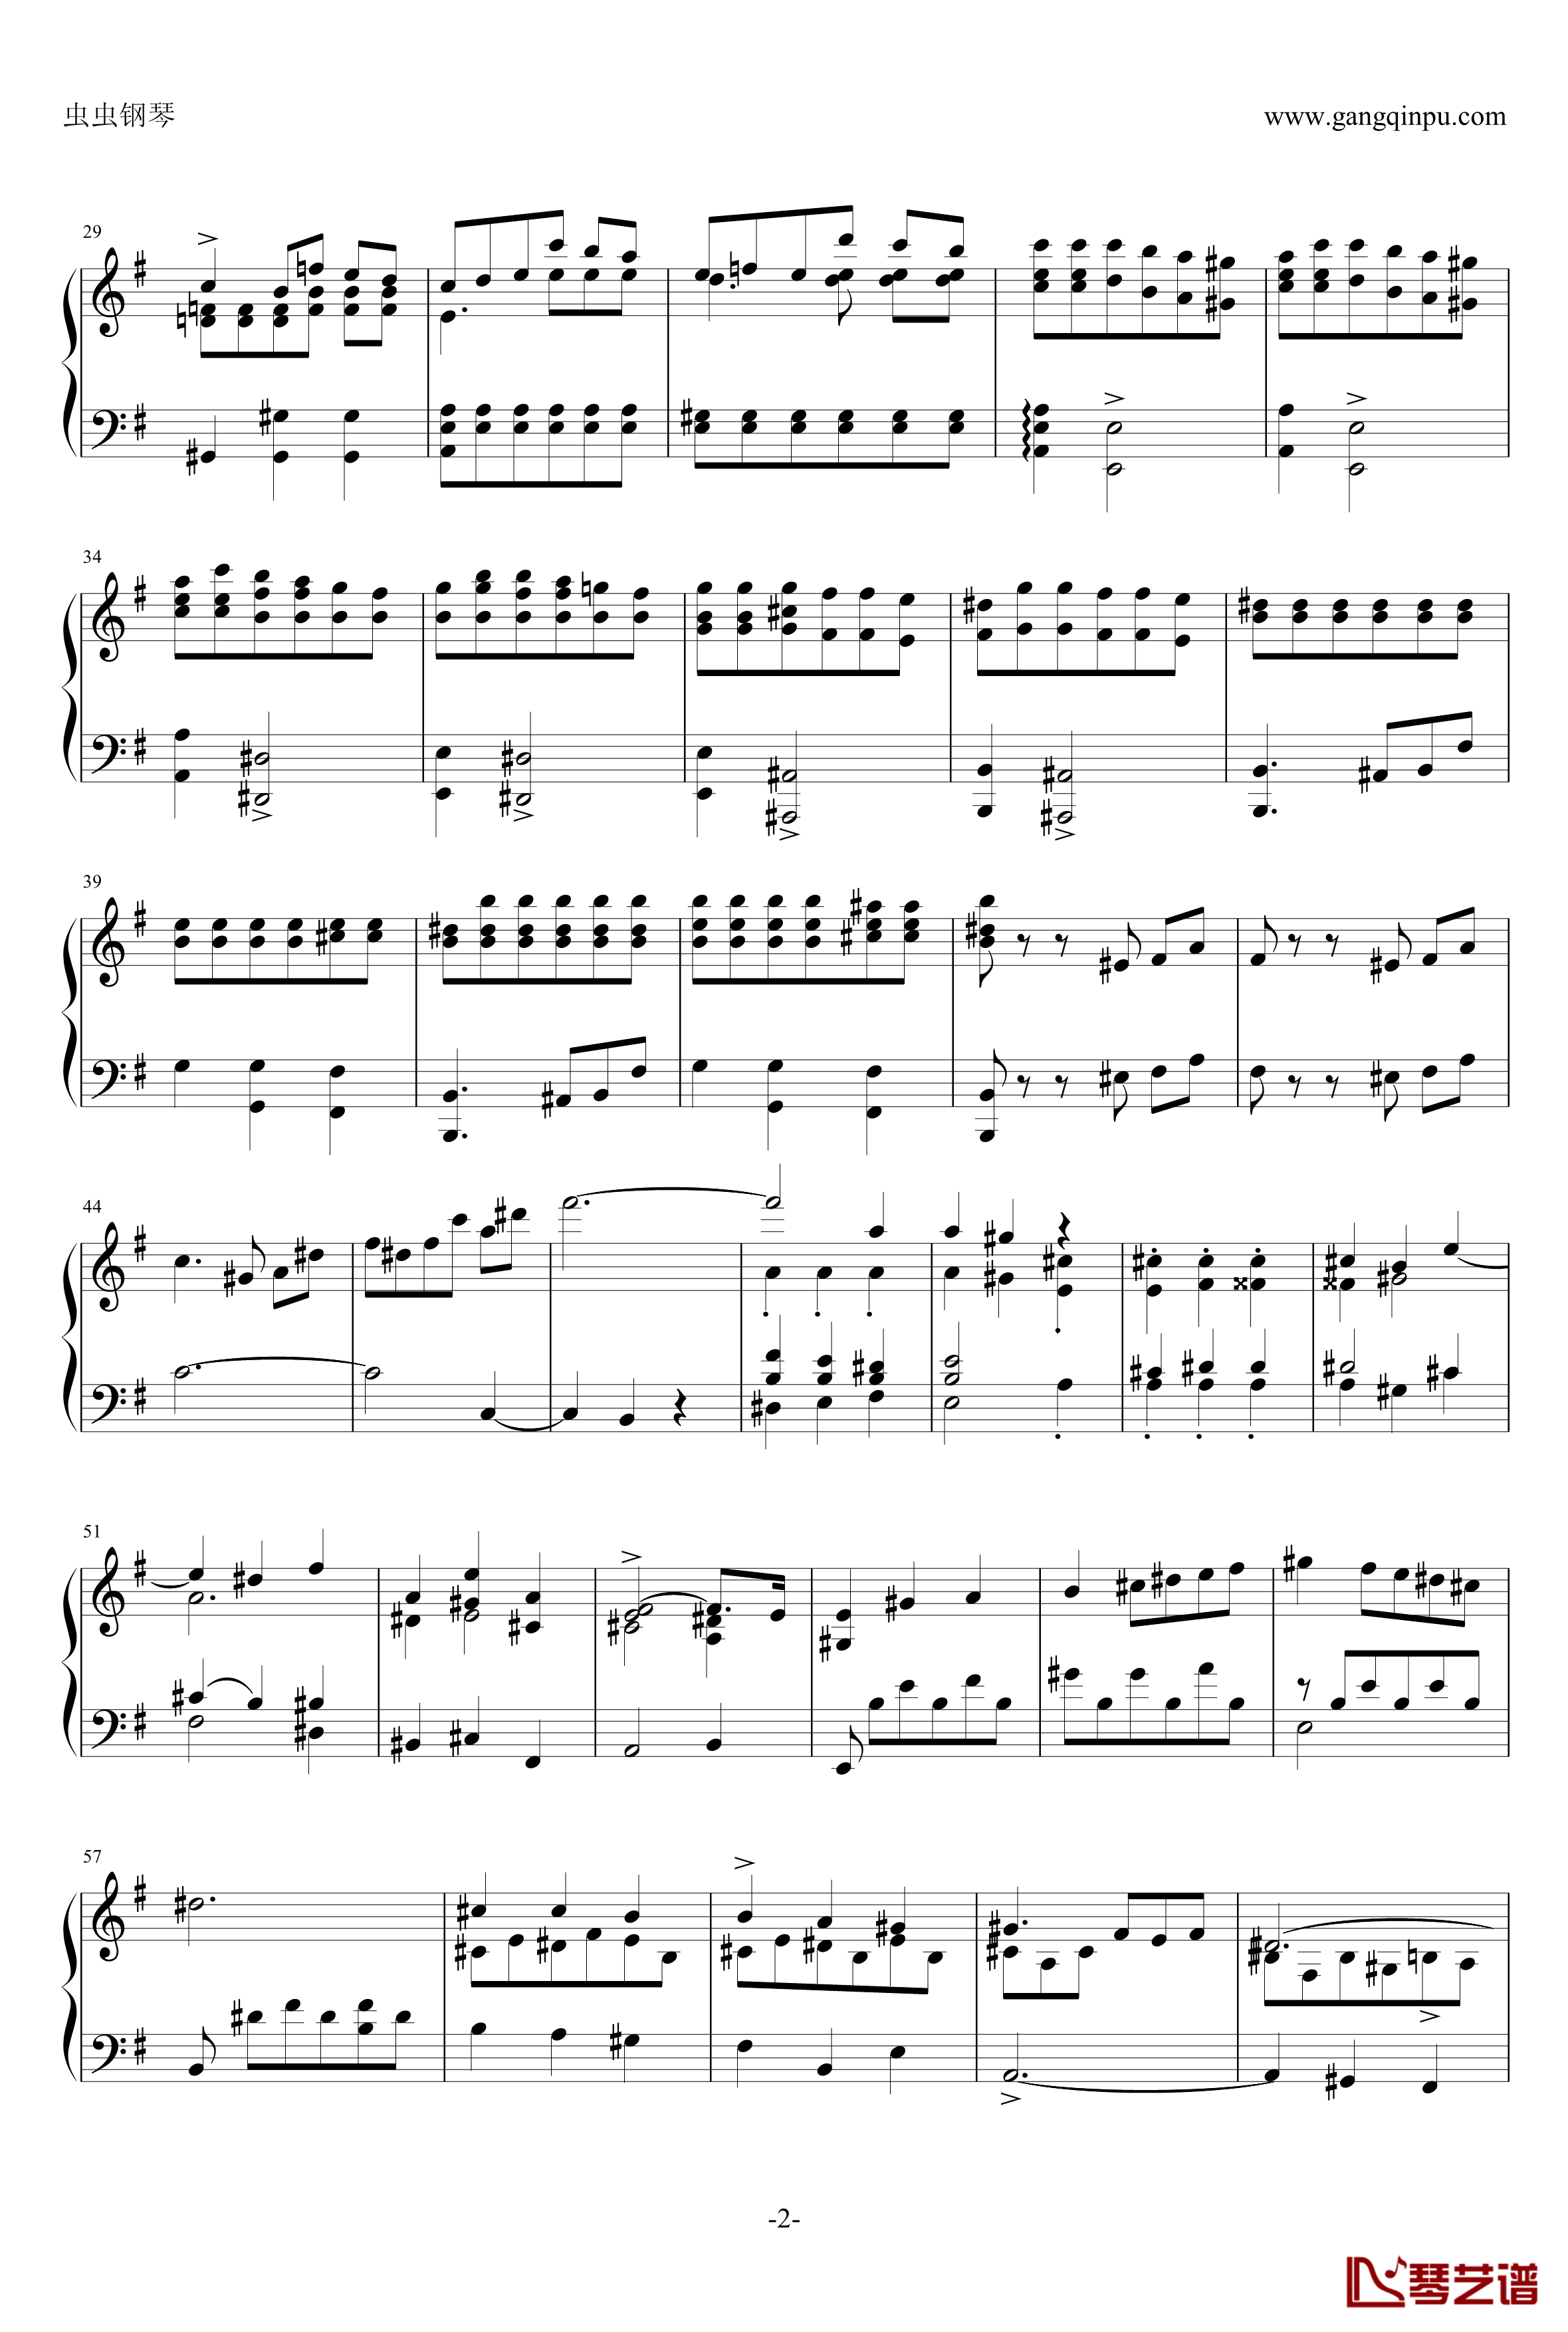 e小调钢琴协奏曲钢琴谱-乐之琴简易钢琴版-肖邦-chopin2